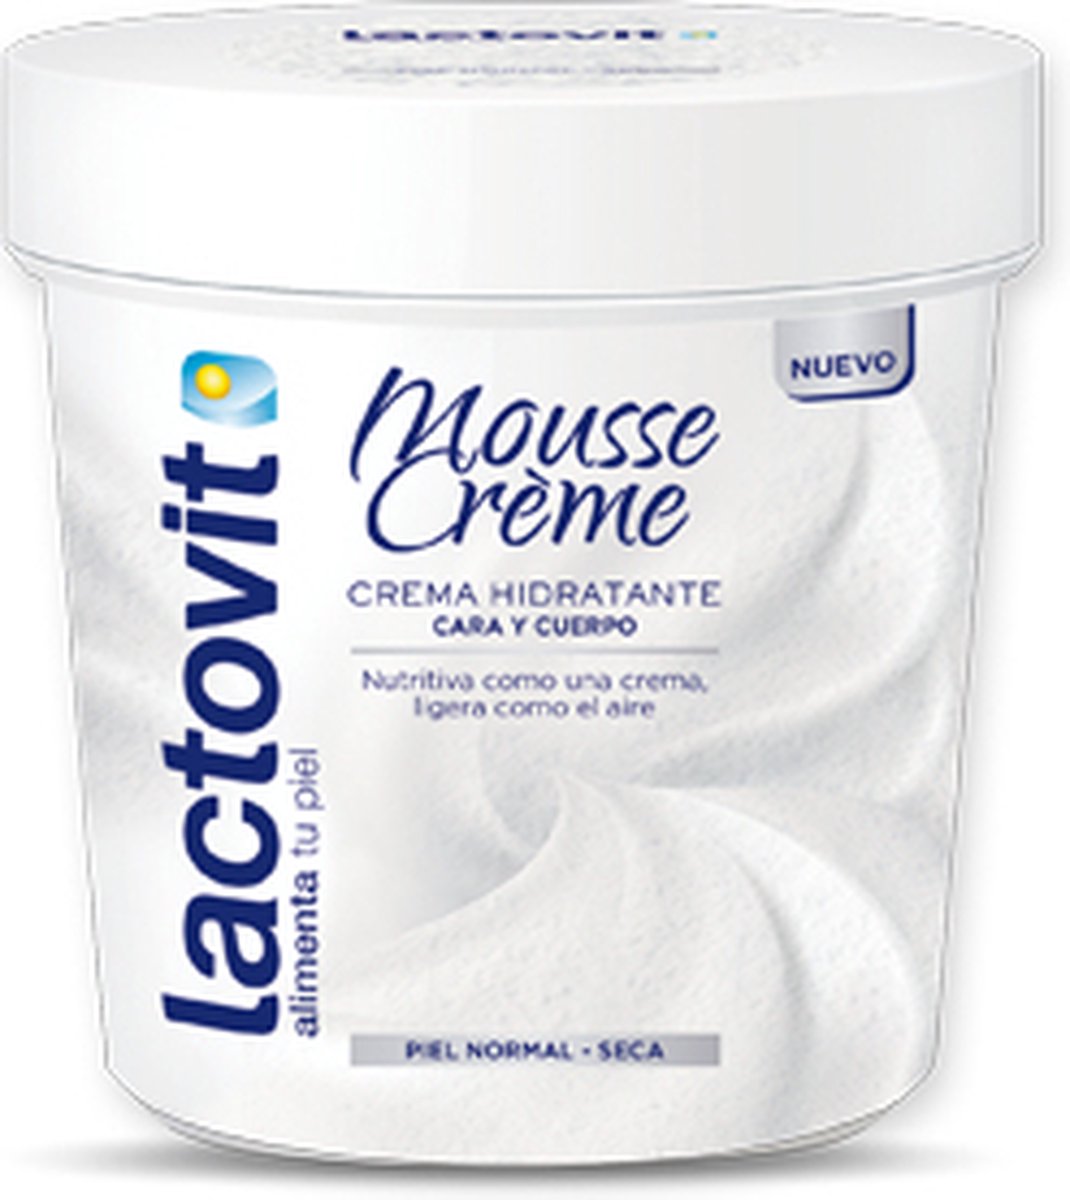 Lactovit - Original Mousse Cream